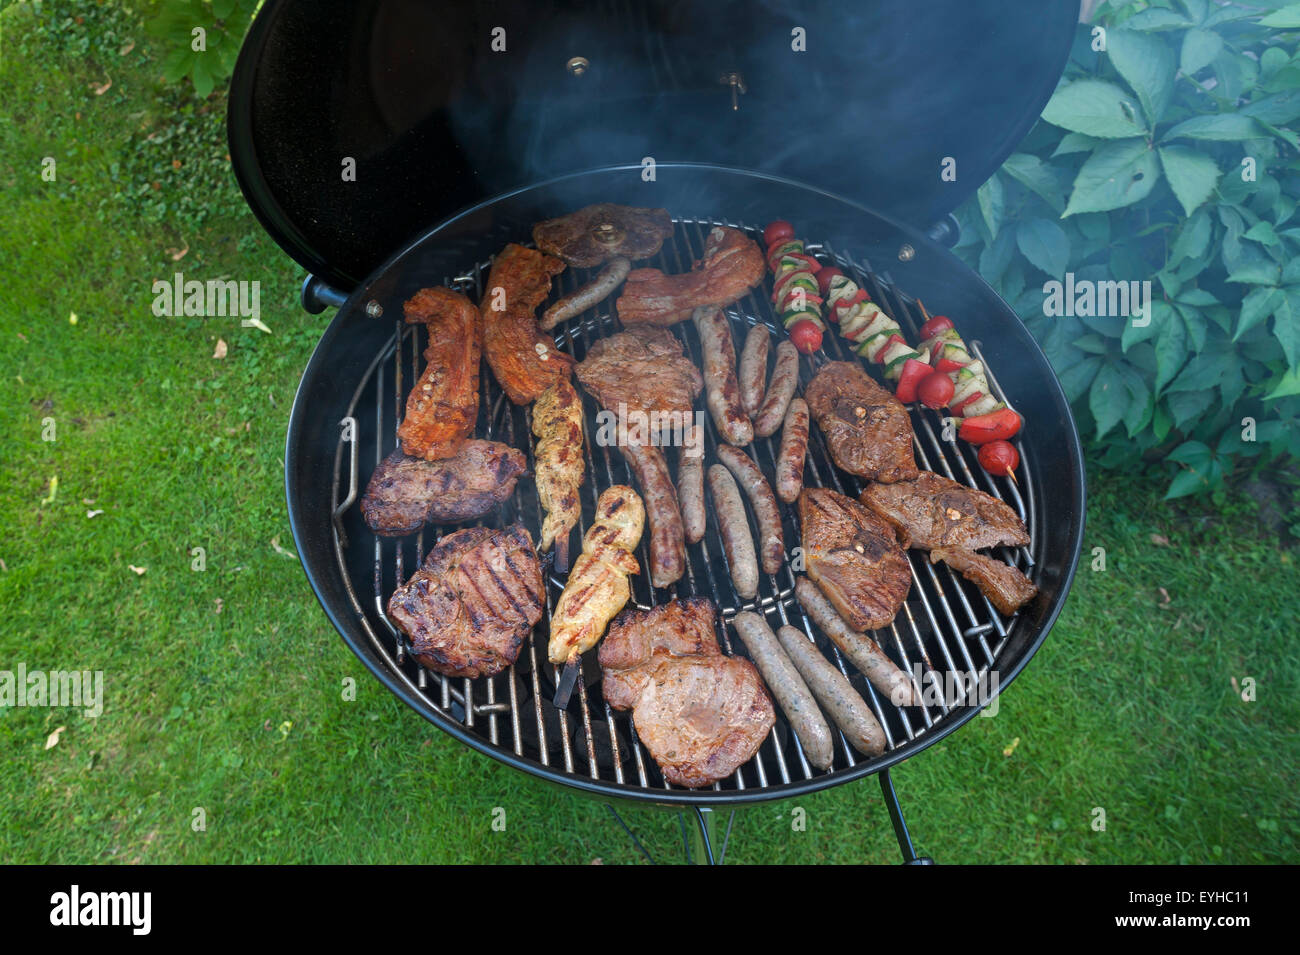 Viande, saucisses et brochettes végétariennes sur un barbecue au charbon de bois Banque D'Images